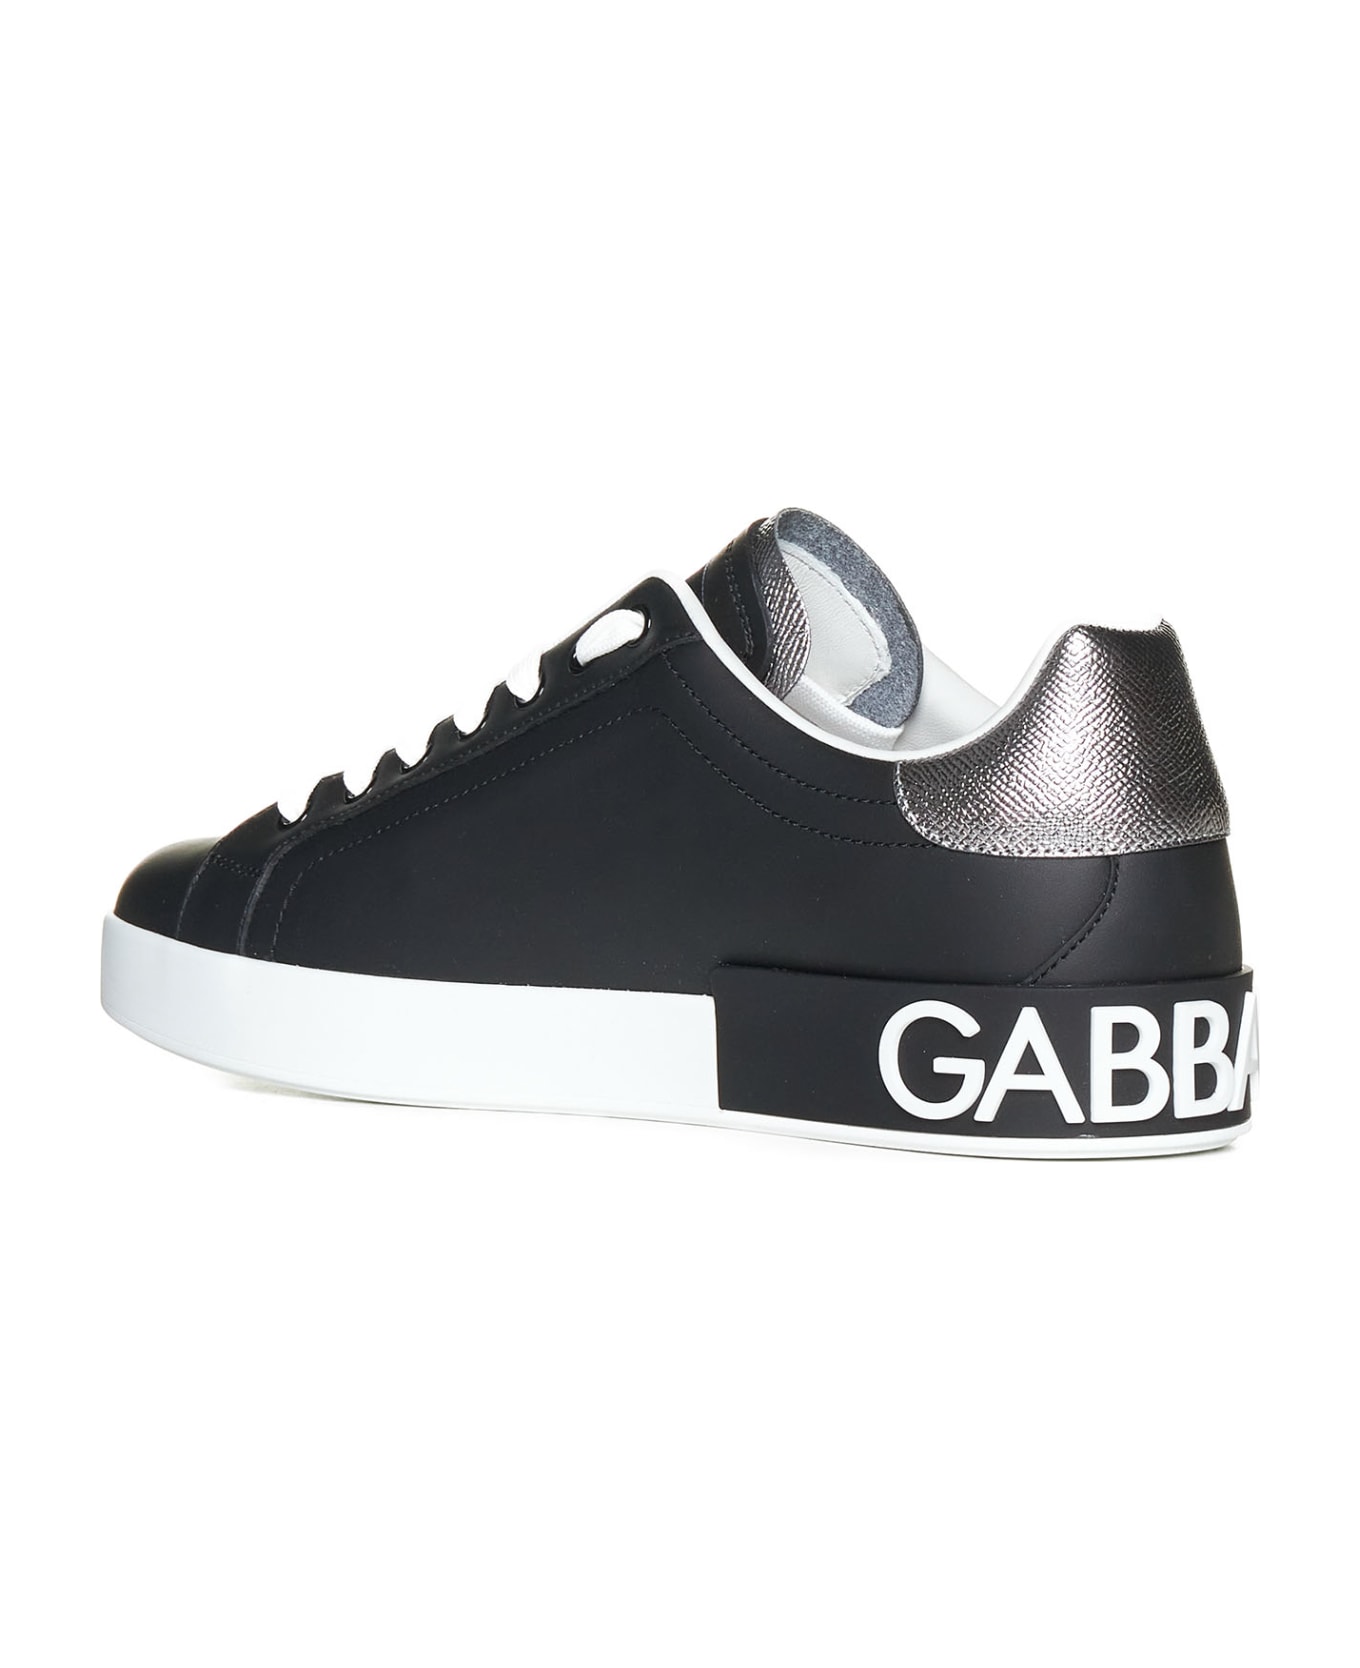 Dolce & Gabbana Portofino Leather Sneakers - Black / Silver スニーカー